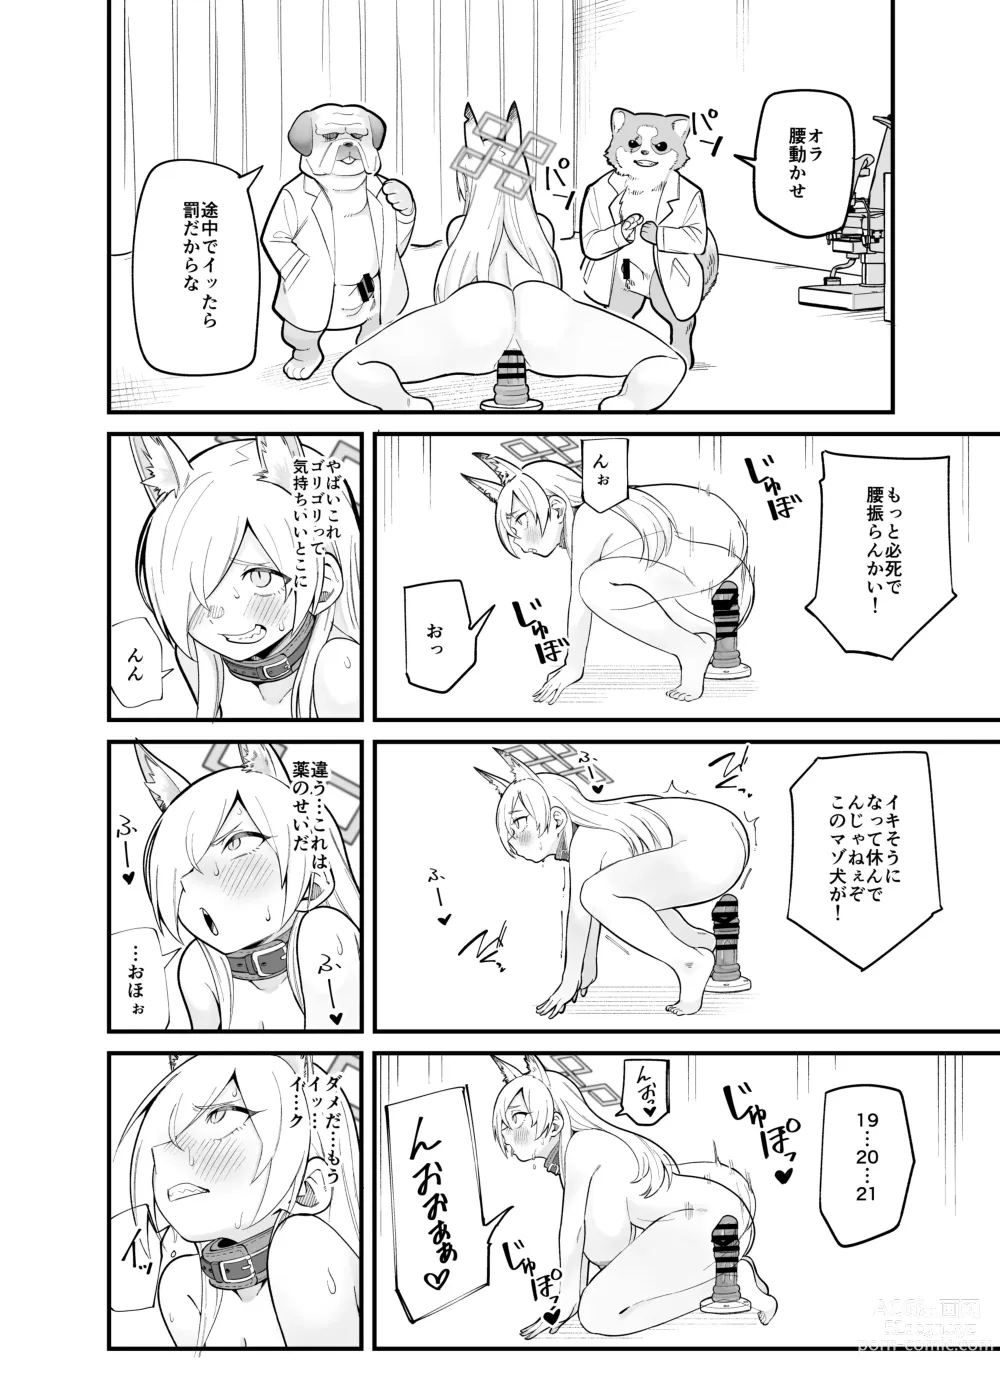 Page 25 of doujinshi Kanna no Rakujitsu